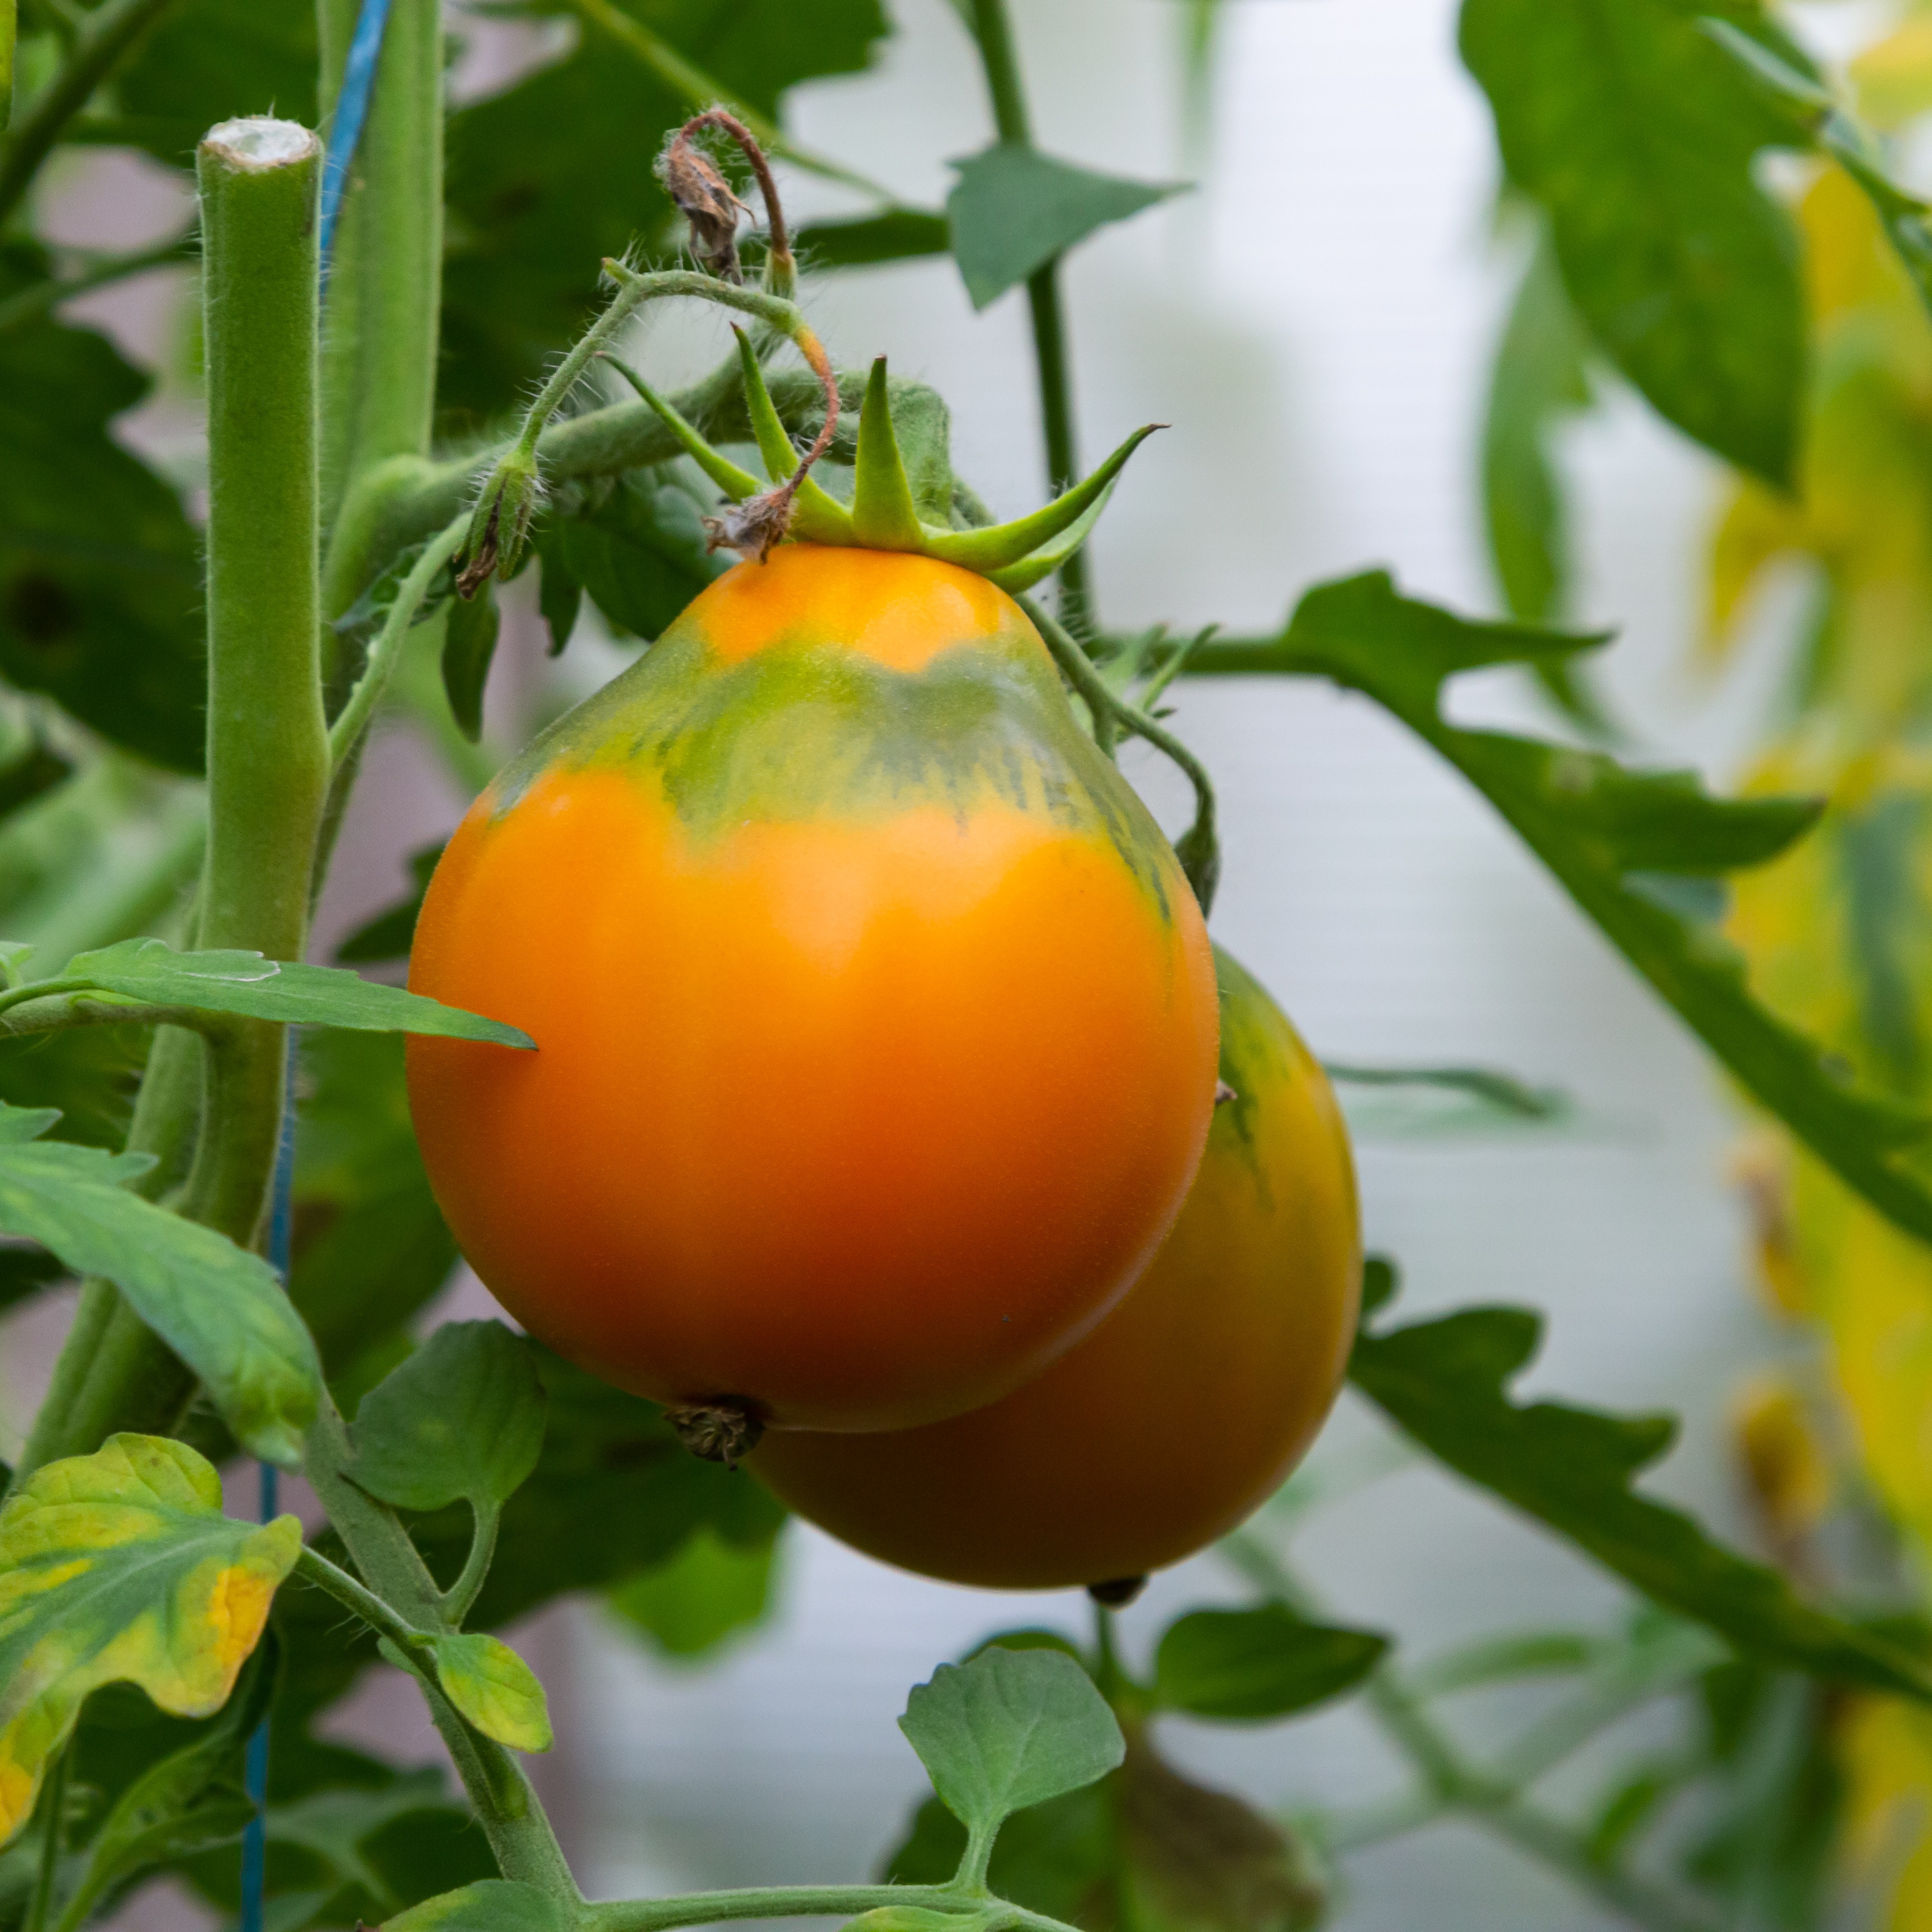 Image de tomates avec un collet vert - Aveve